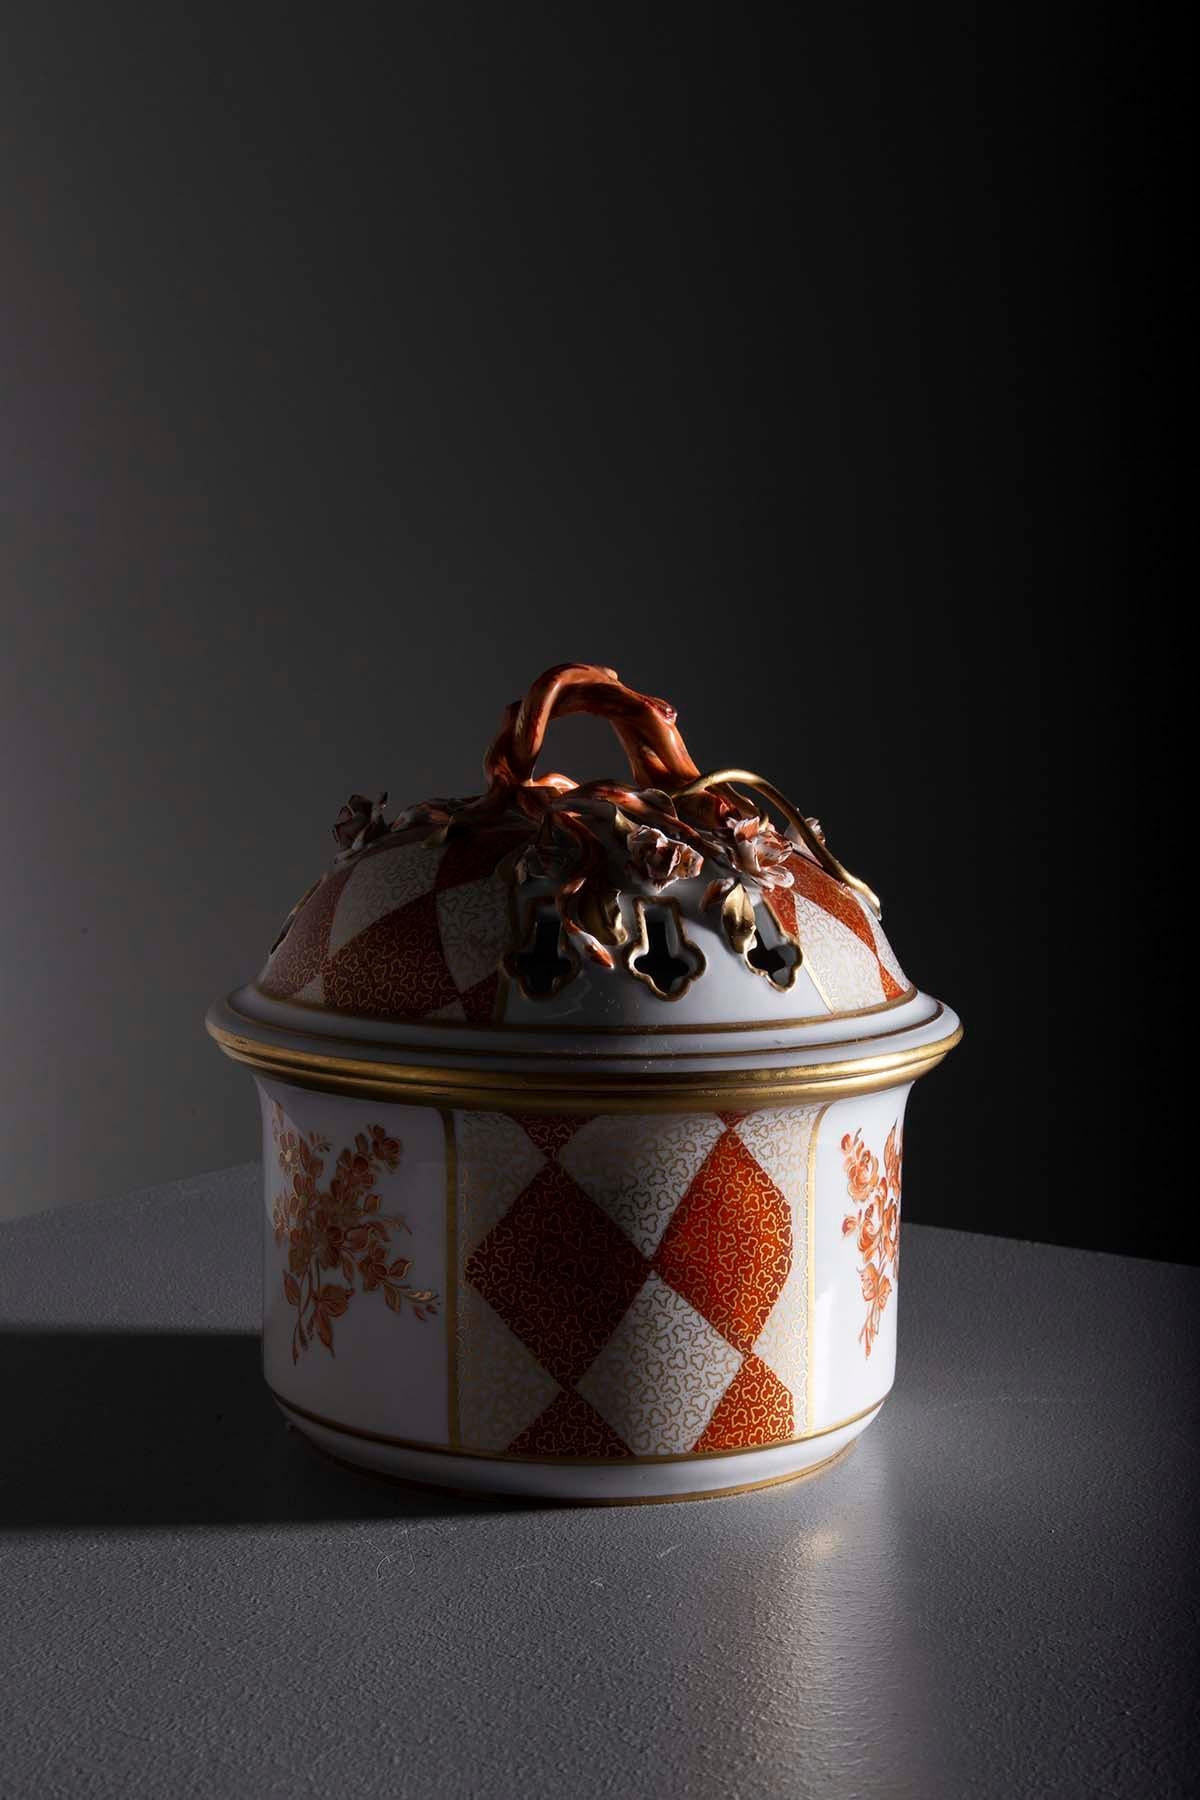 Plongez dans l'art intemporel avec ce pot à biscuits exceptionnel en exquise porcelaine de Sèvres. La marque de Sèvres apposée sur la base confirme son authenticité et son origine de l'une des plus illustres manufactures de porcelaine au monde.